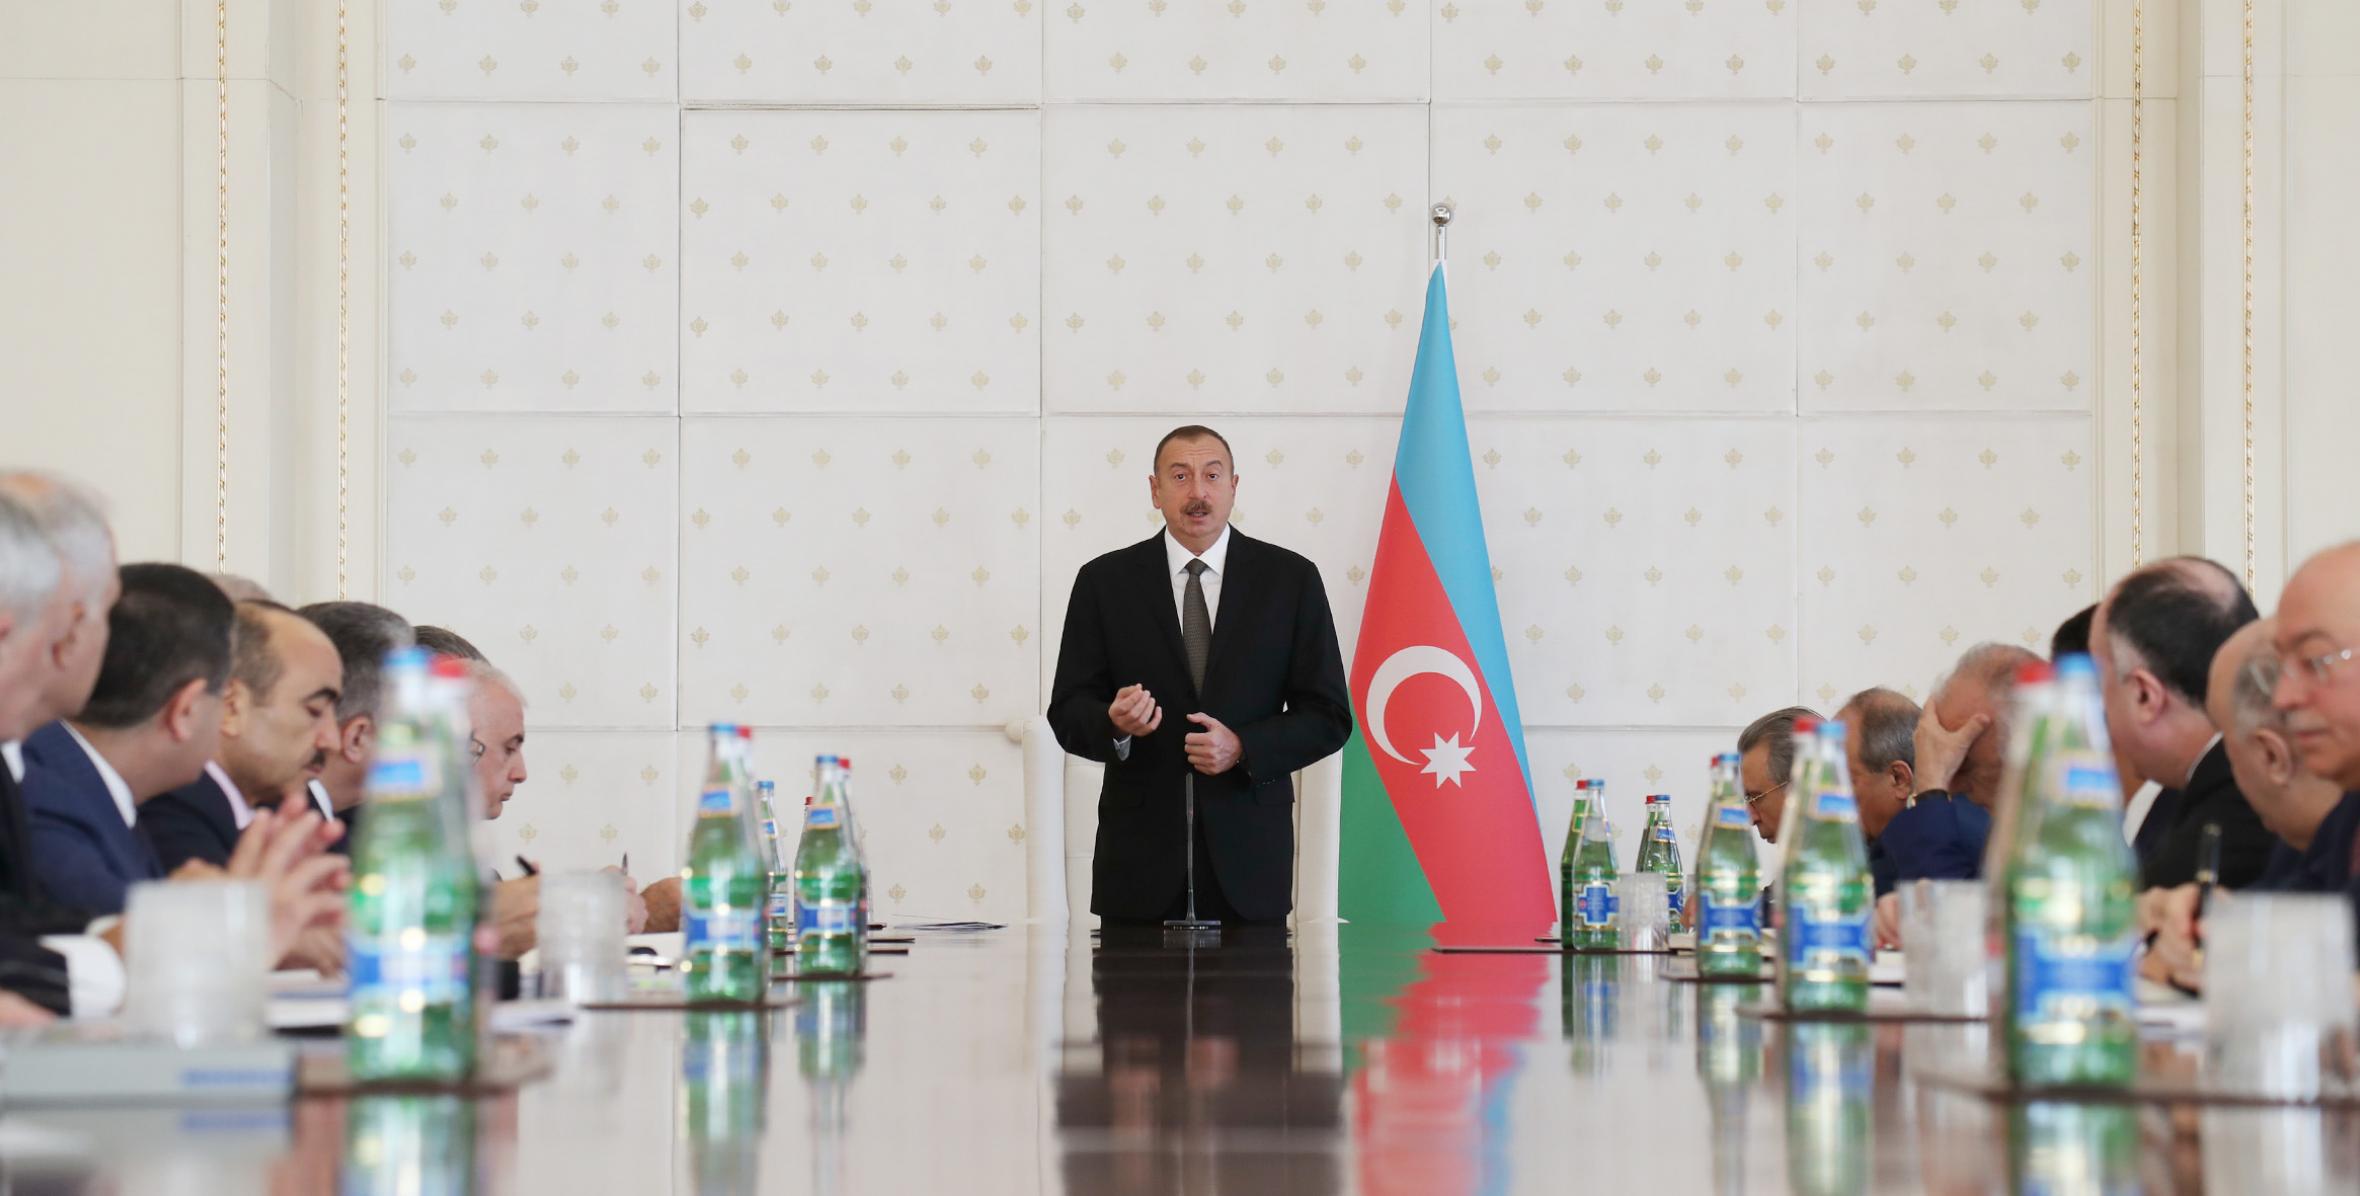 Под председательством Ильхама Алиева состоялось заседание Кабинета Министров, посвященное итогам социально-экономического развития девяти месяцев 2016 года и предстоящим задачам